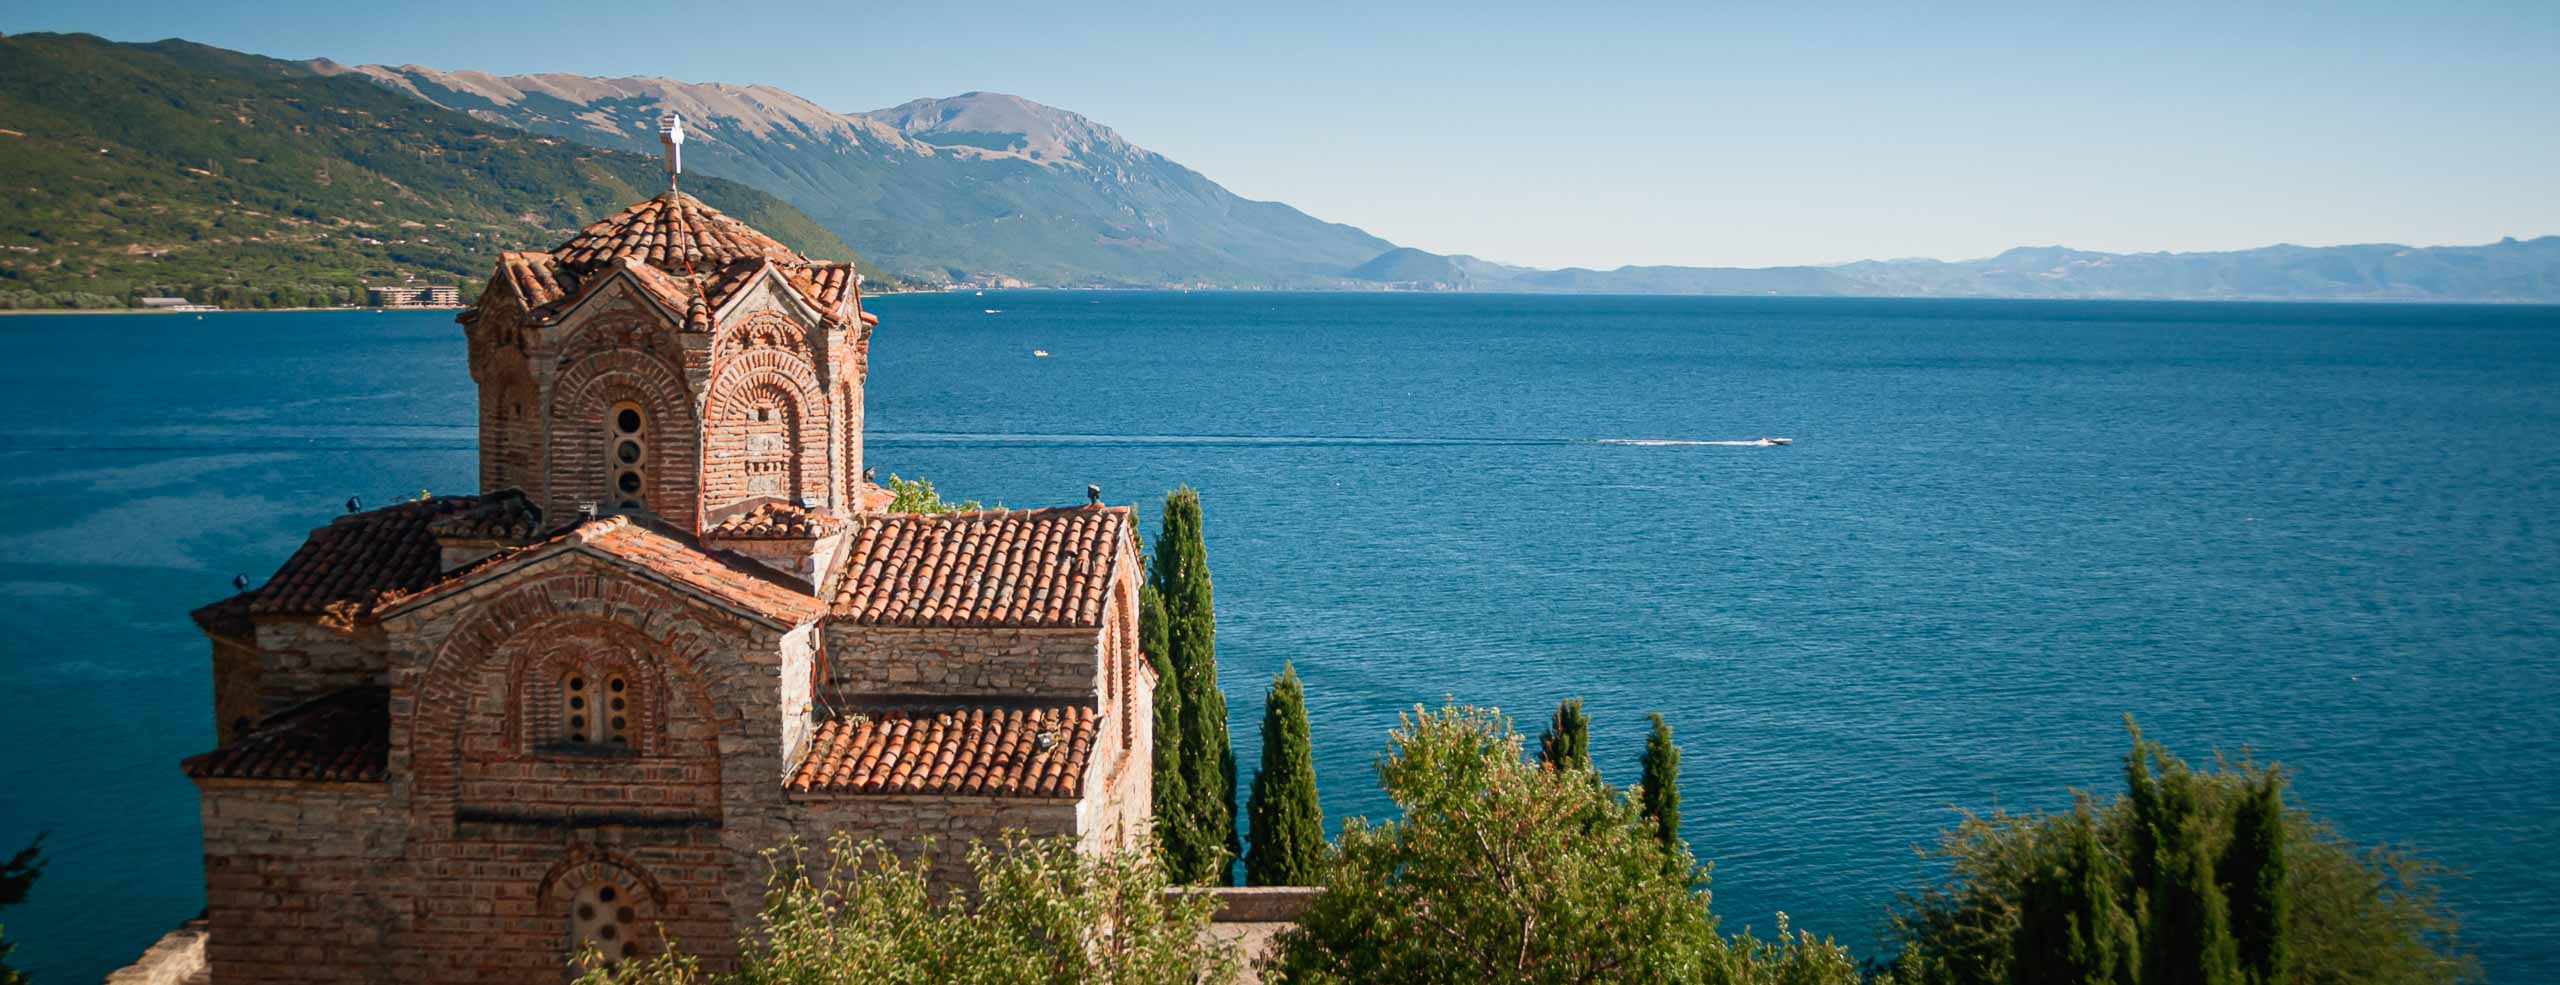 Église Saint-Jean de Kaneo surplombant le lac d'Ohrid au cœur des montagnes à la frontière entre la Macédoine, la Grèce et l'Albanie, Paysage des Balkans